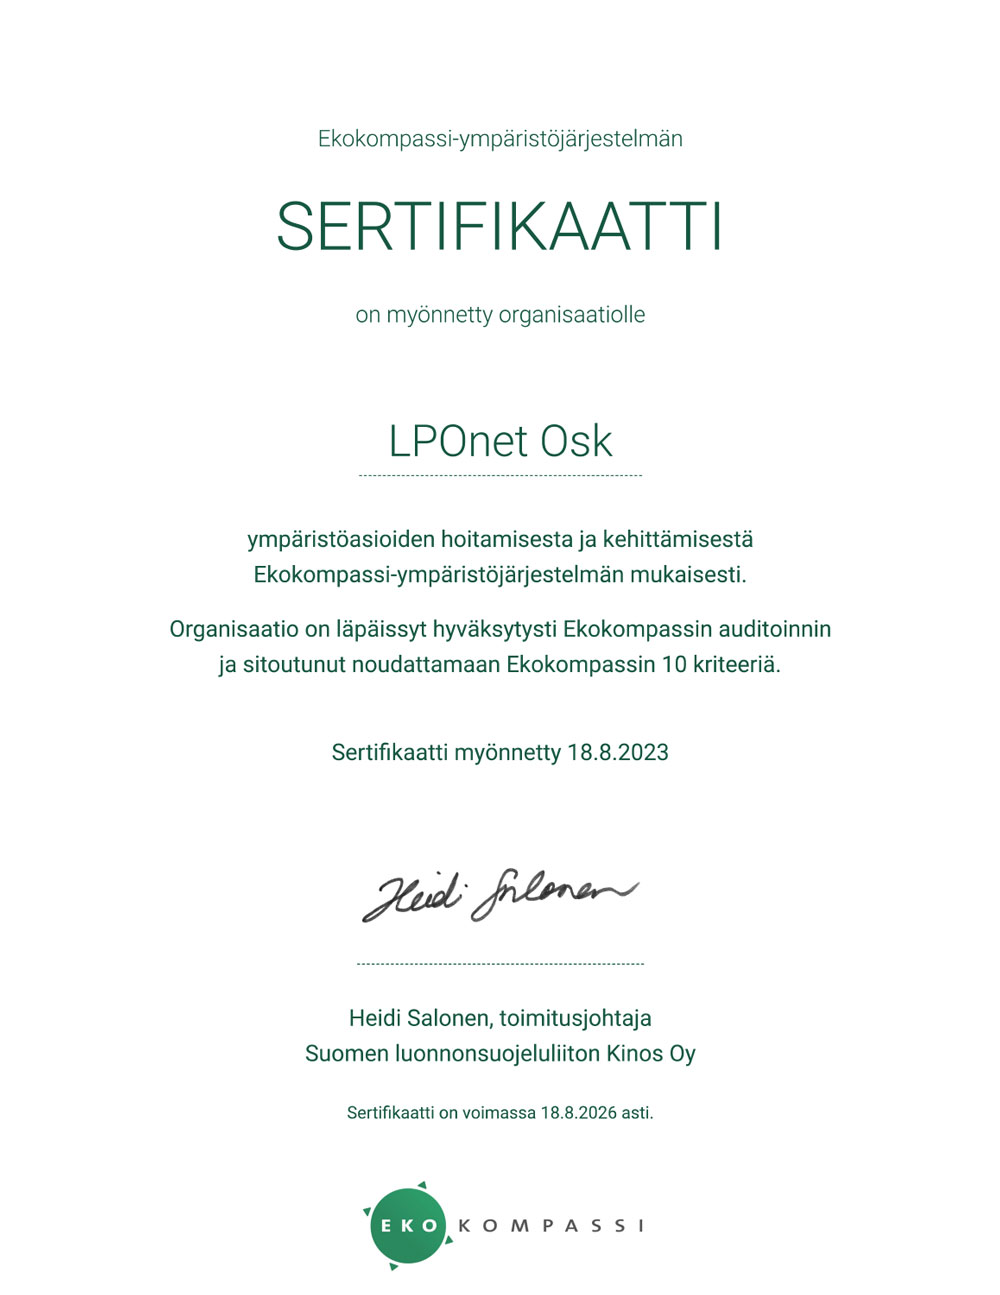 LPOnets har 18.8. beviljats Ekokompassi-certifikat för ansvarsfullhetsprogrammet